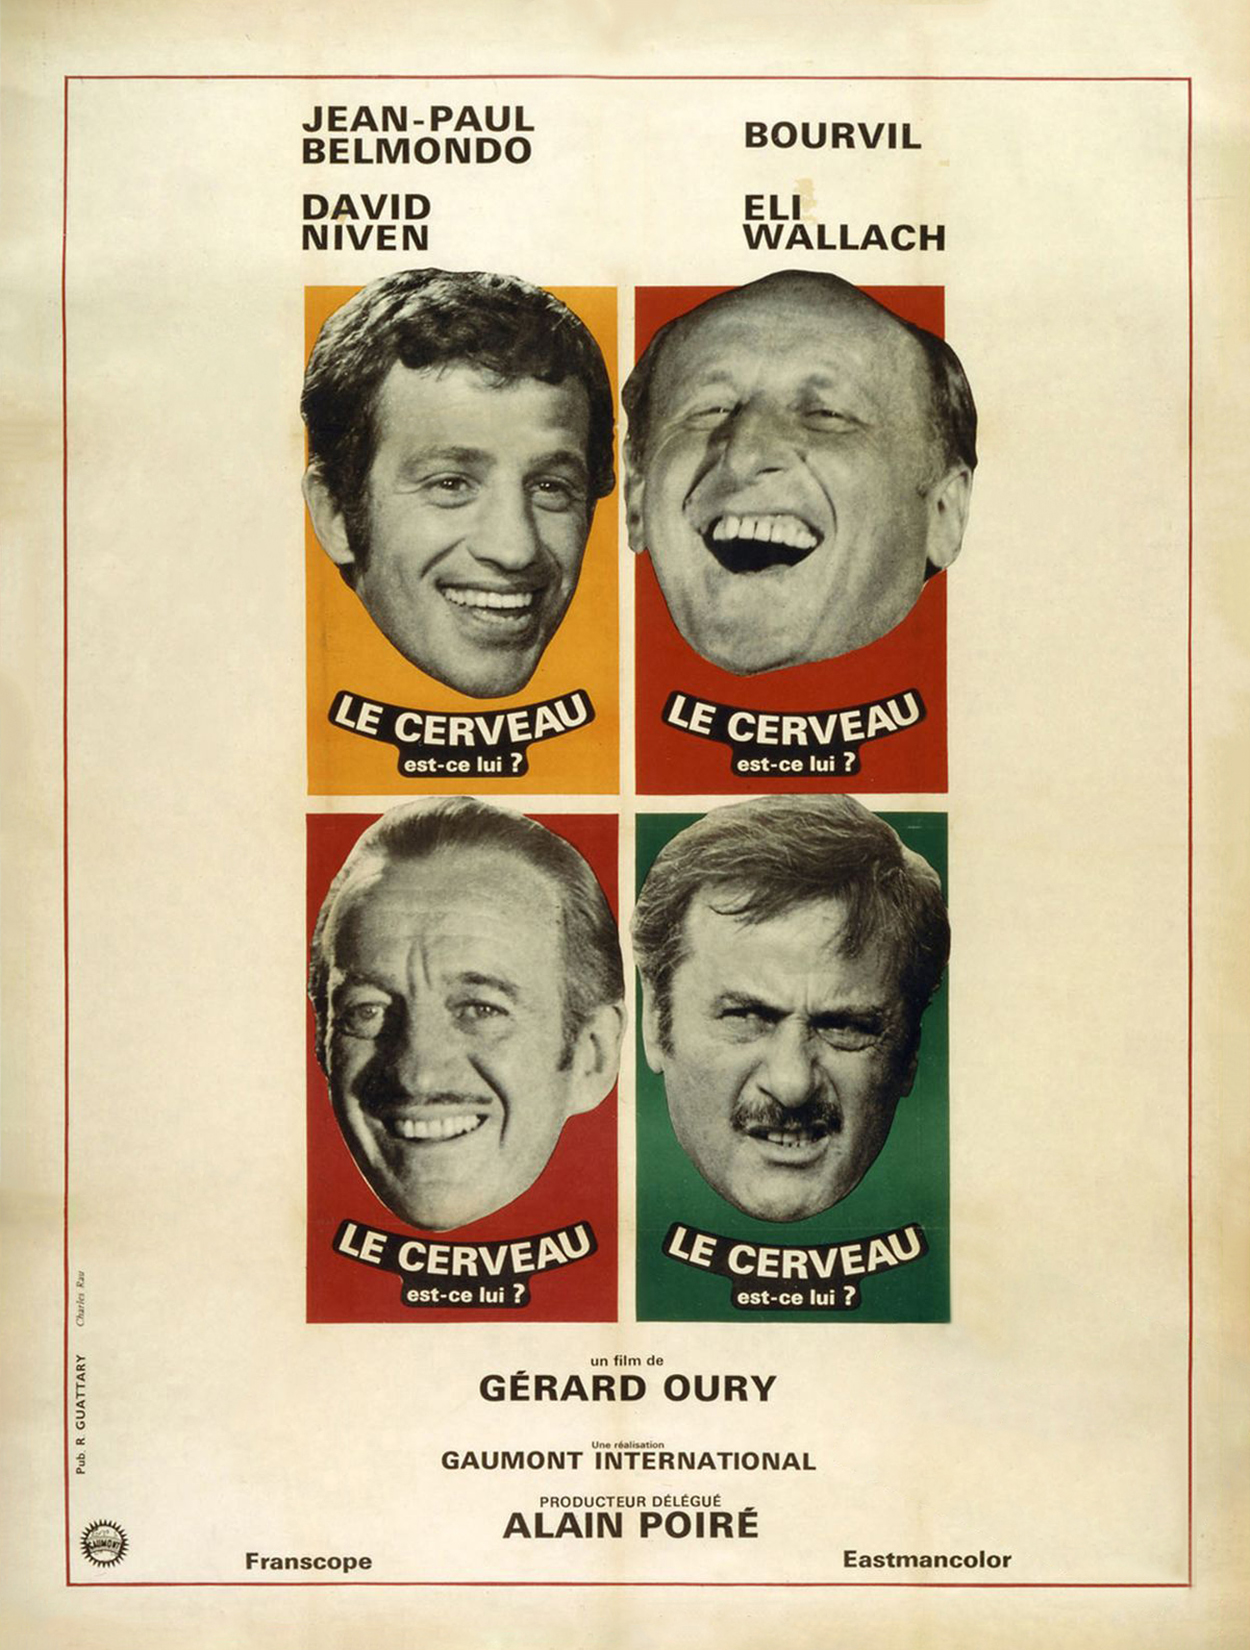 The Brain [Le Cerveau] * (1969, Jean-Paul Belmondo, Bourvil, David